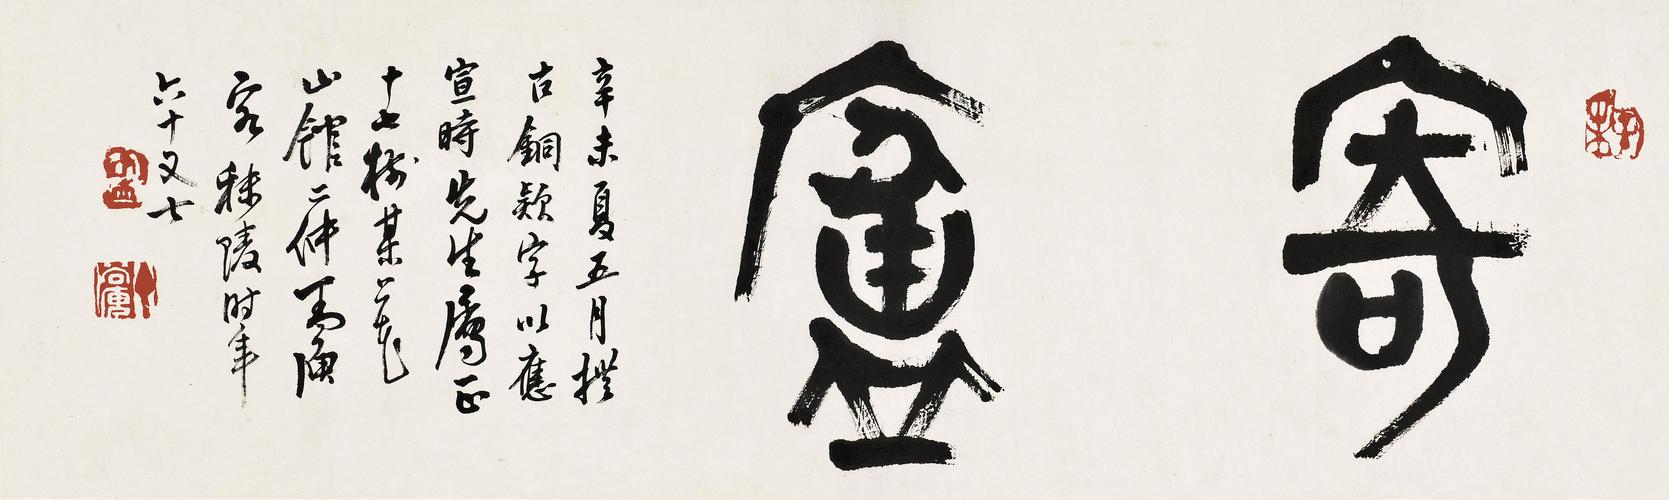 丁二仲(1868-1935)篆书"寄庐"